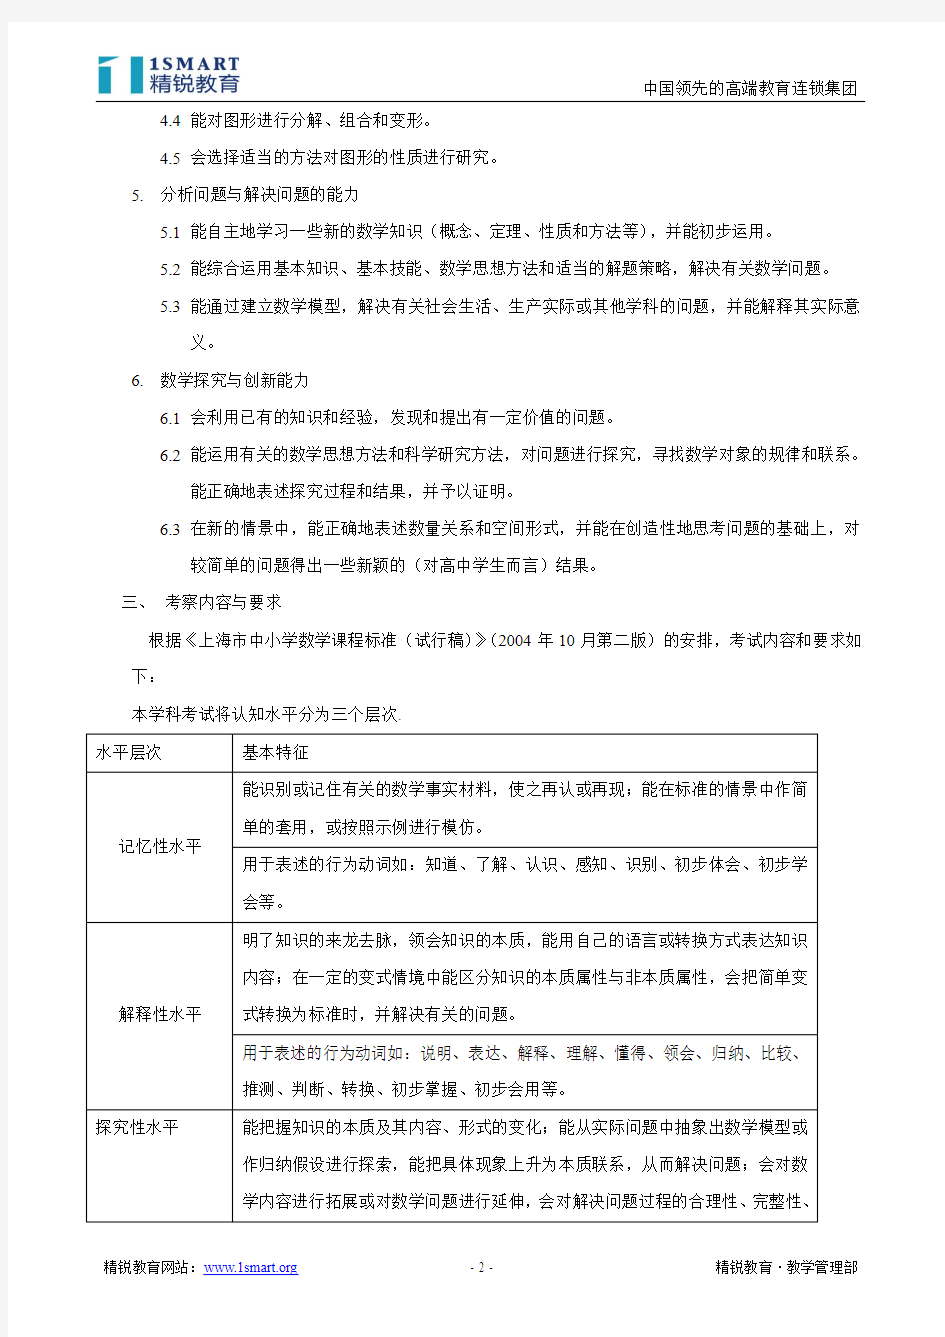 2012年 上海市高考数学考试大纲 考试手册